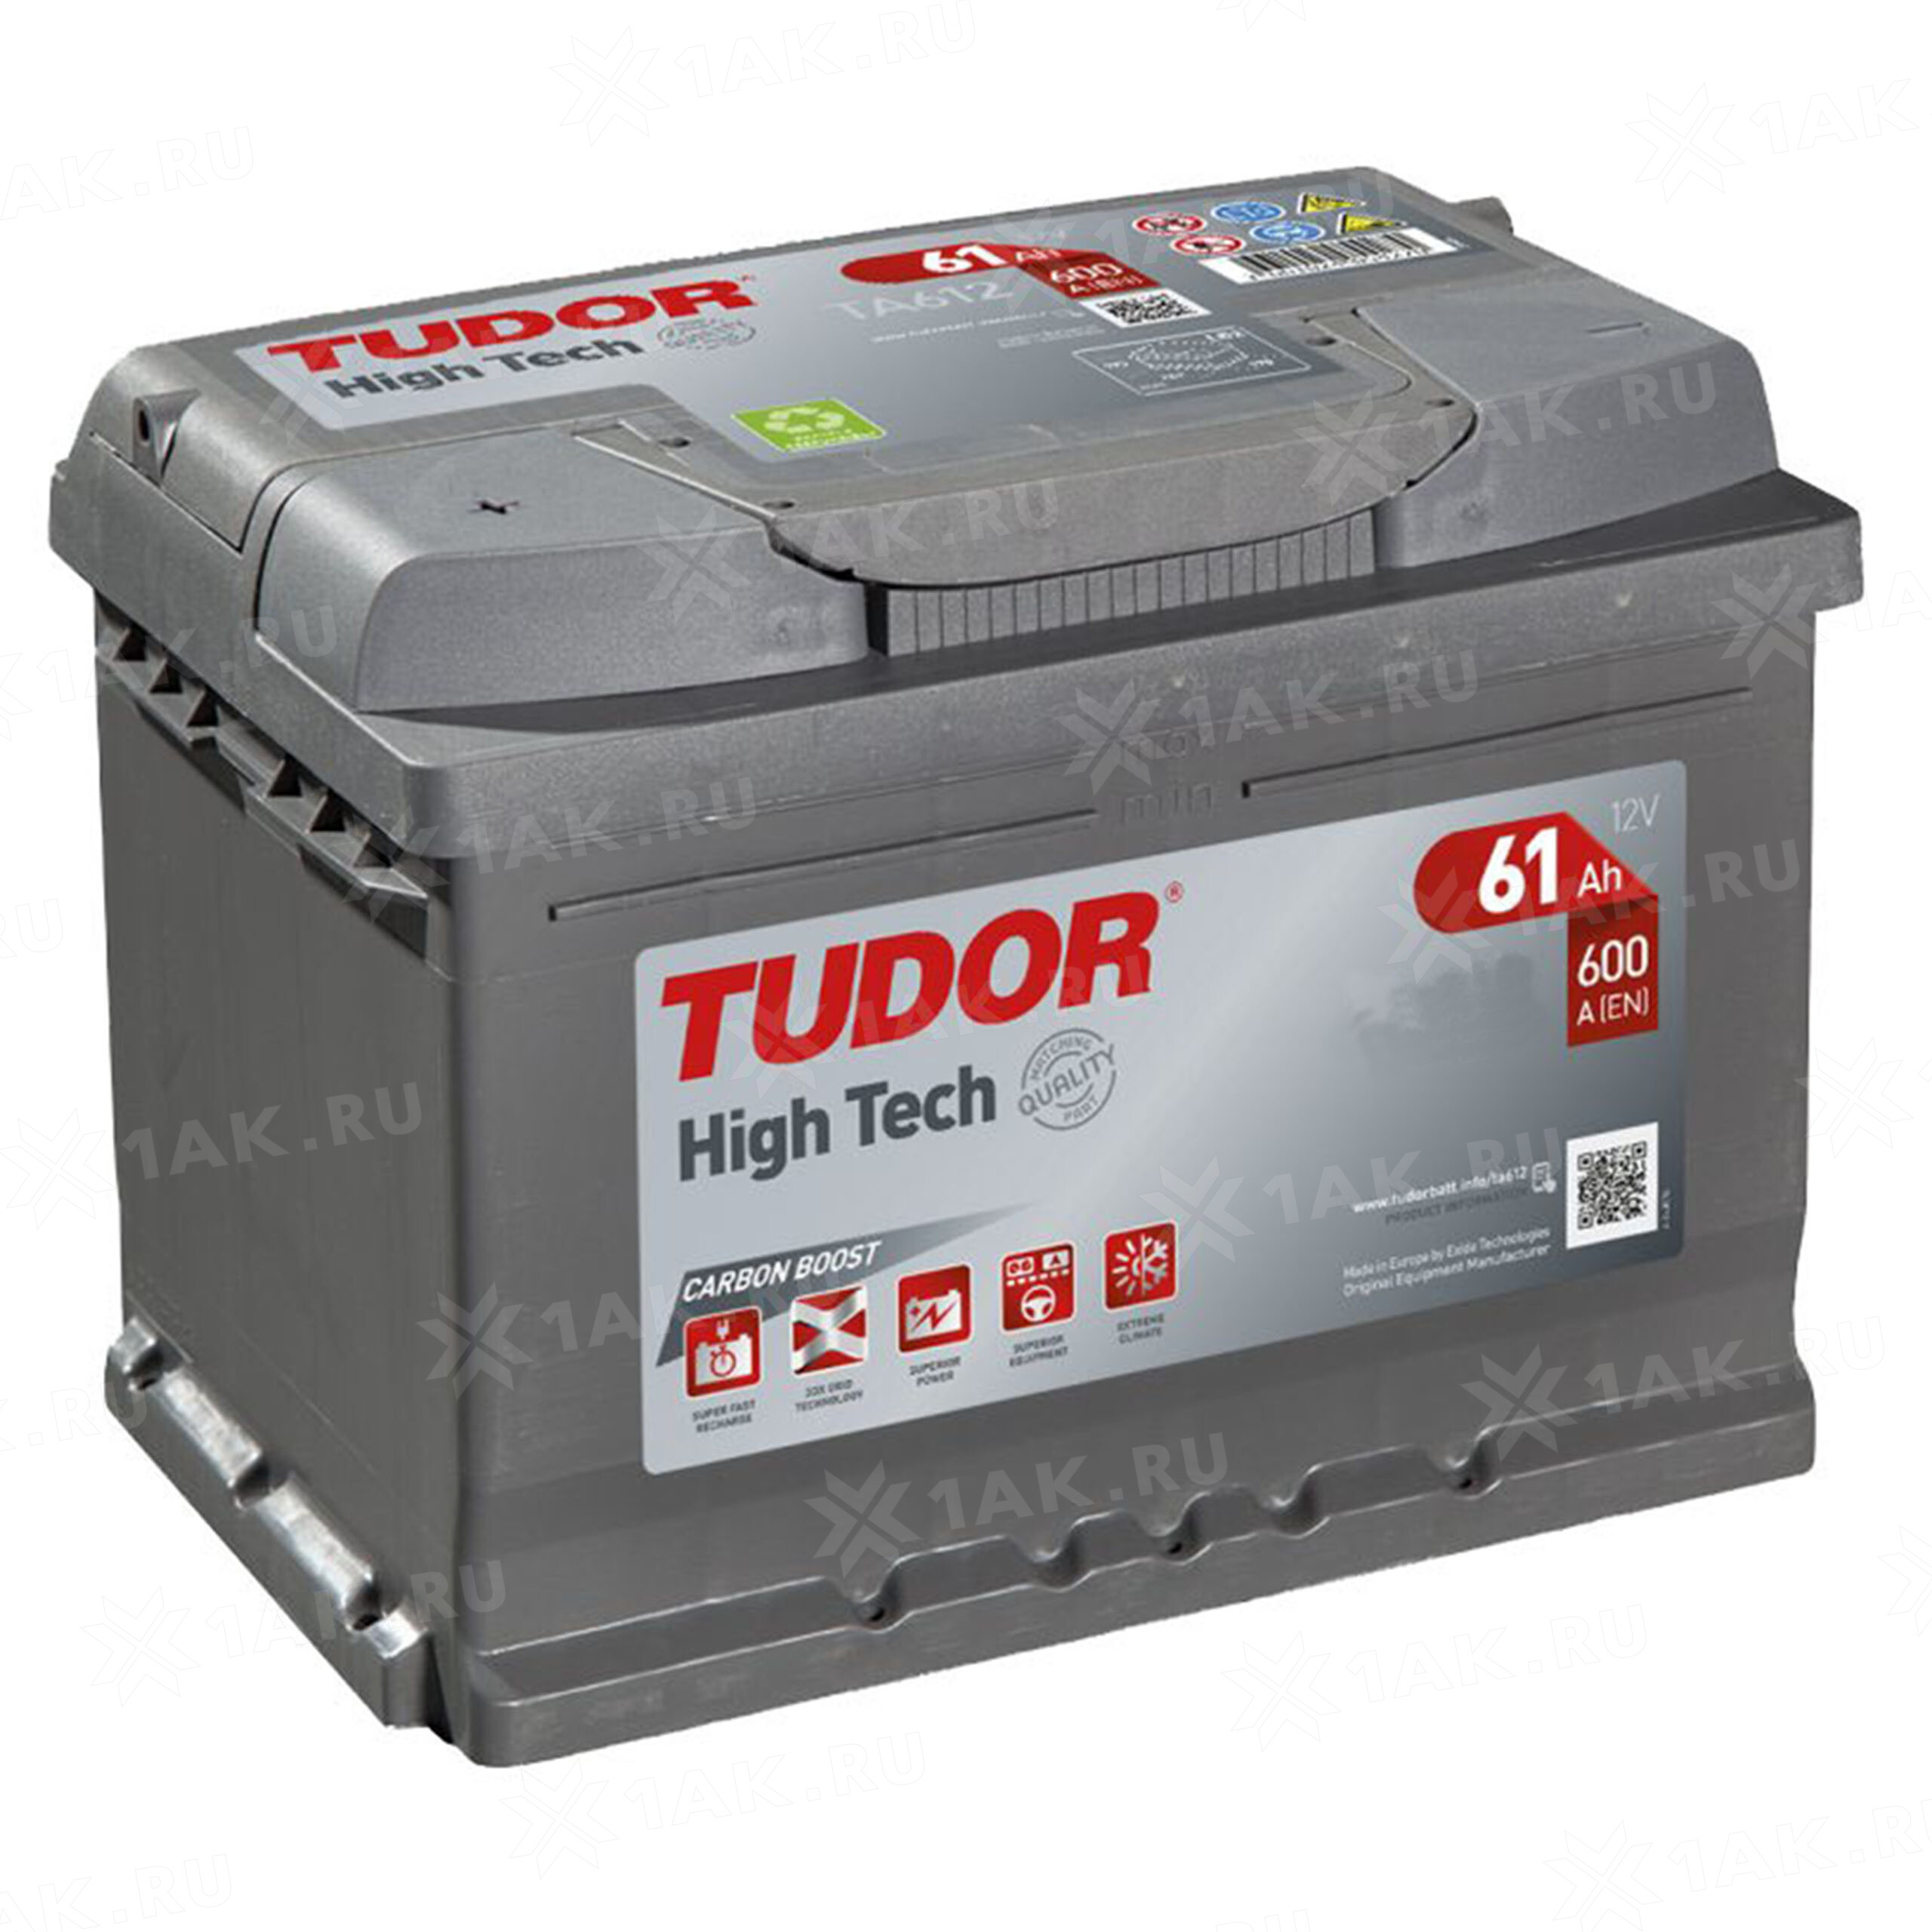 Bateria Tudor Technica TB604 12V - 60Ah - 390A